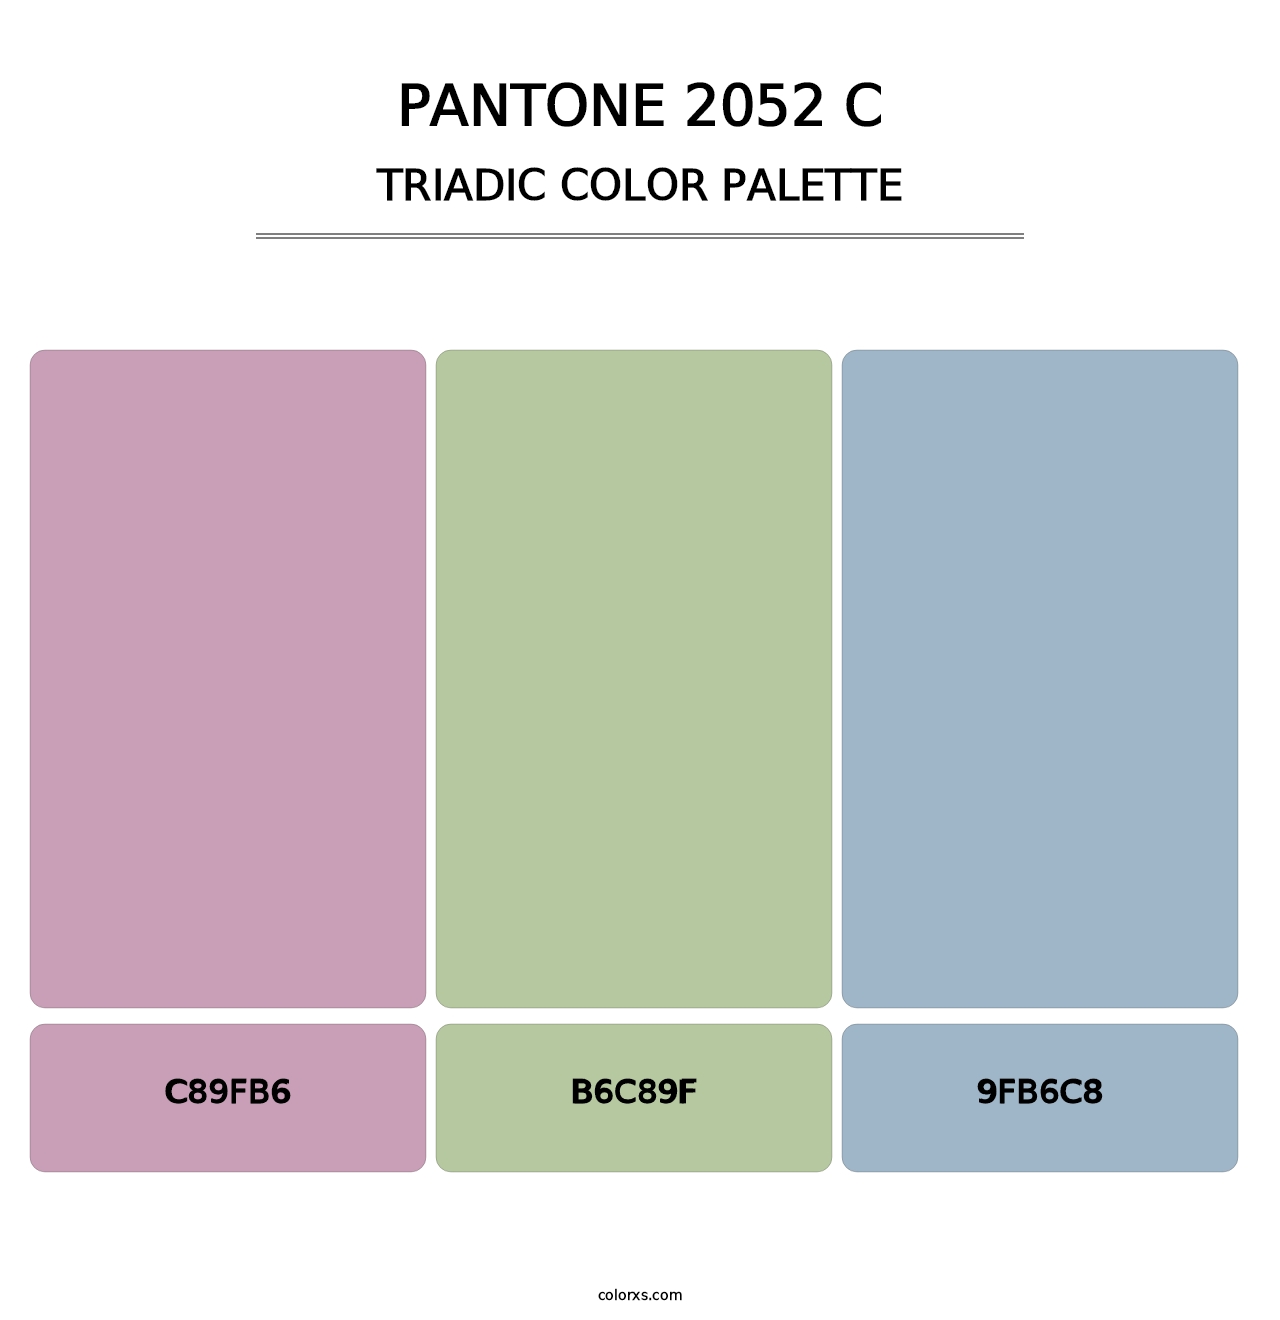 PANTONE 2052 C - Triadic Color Palette